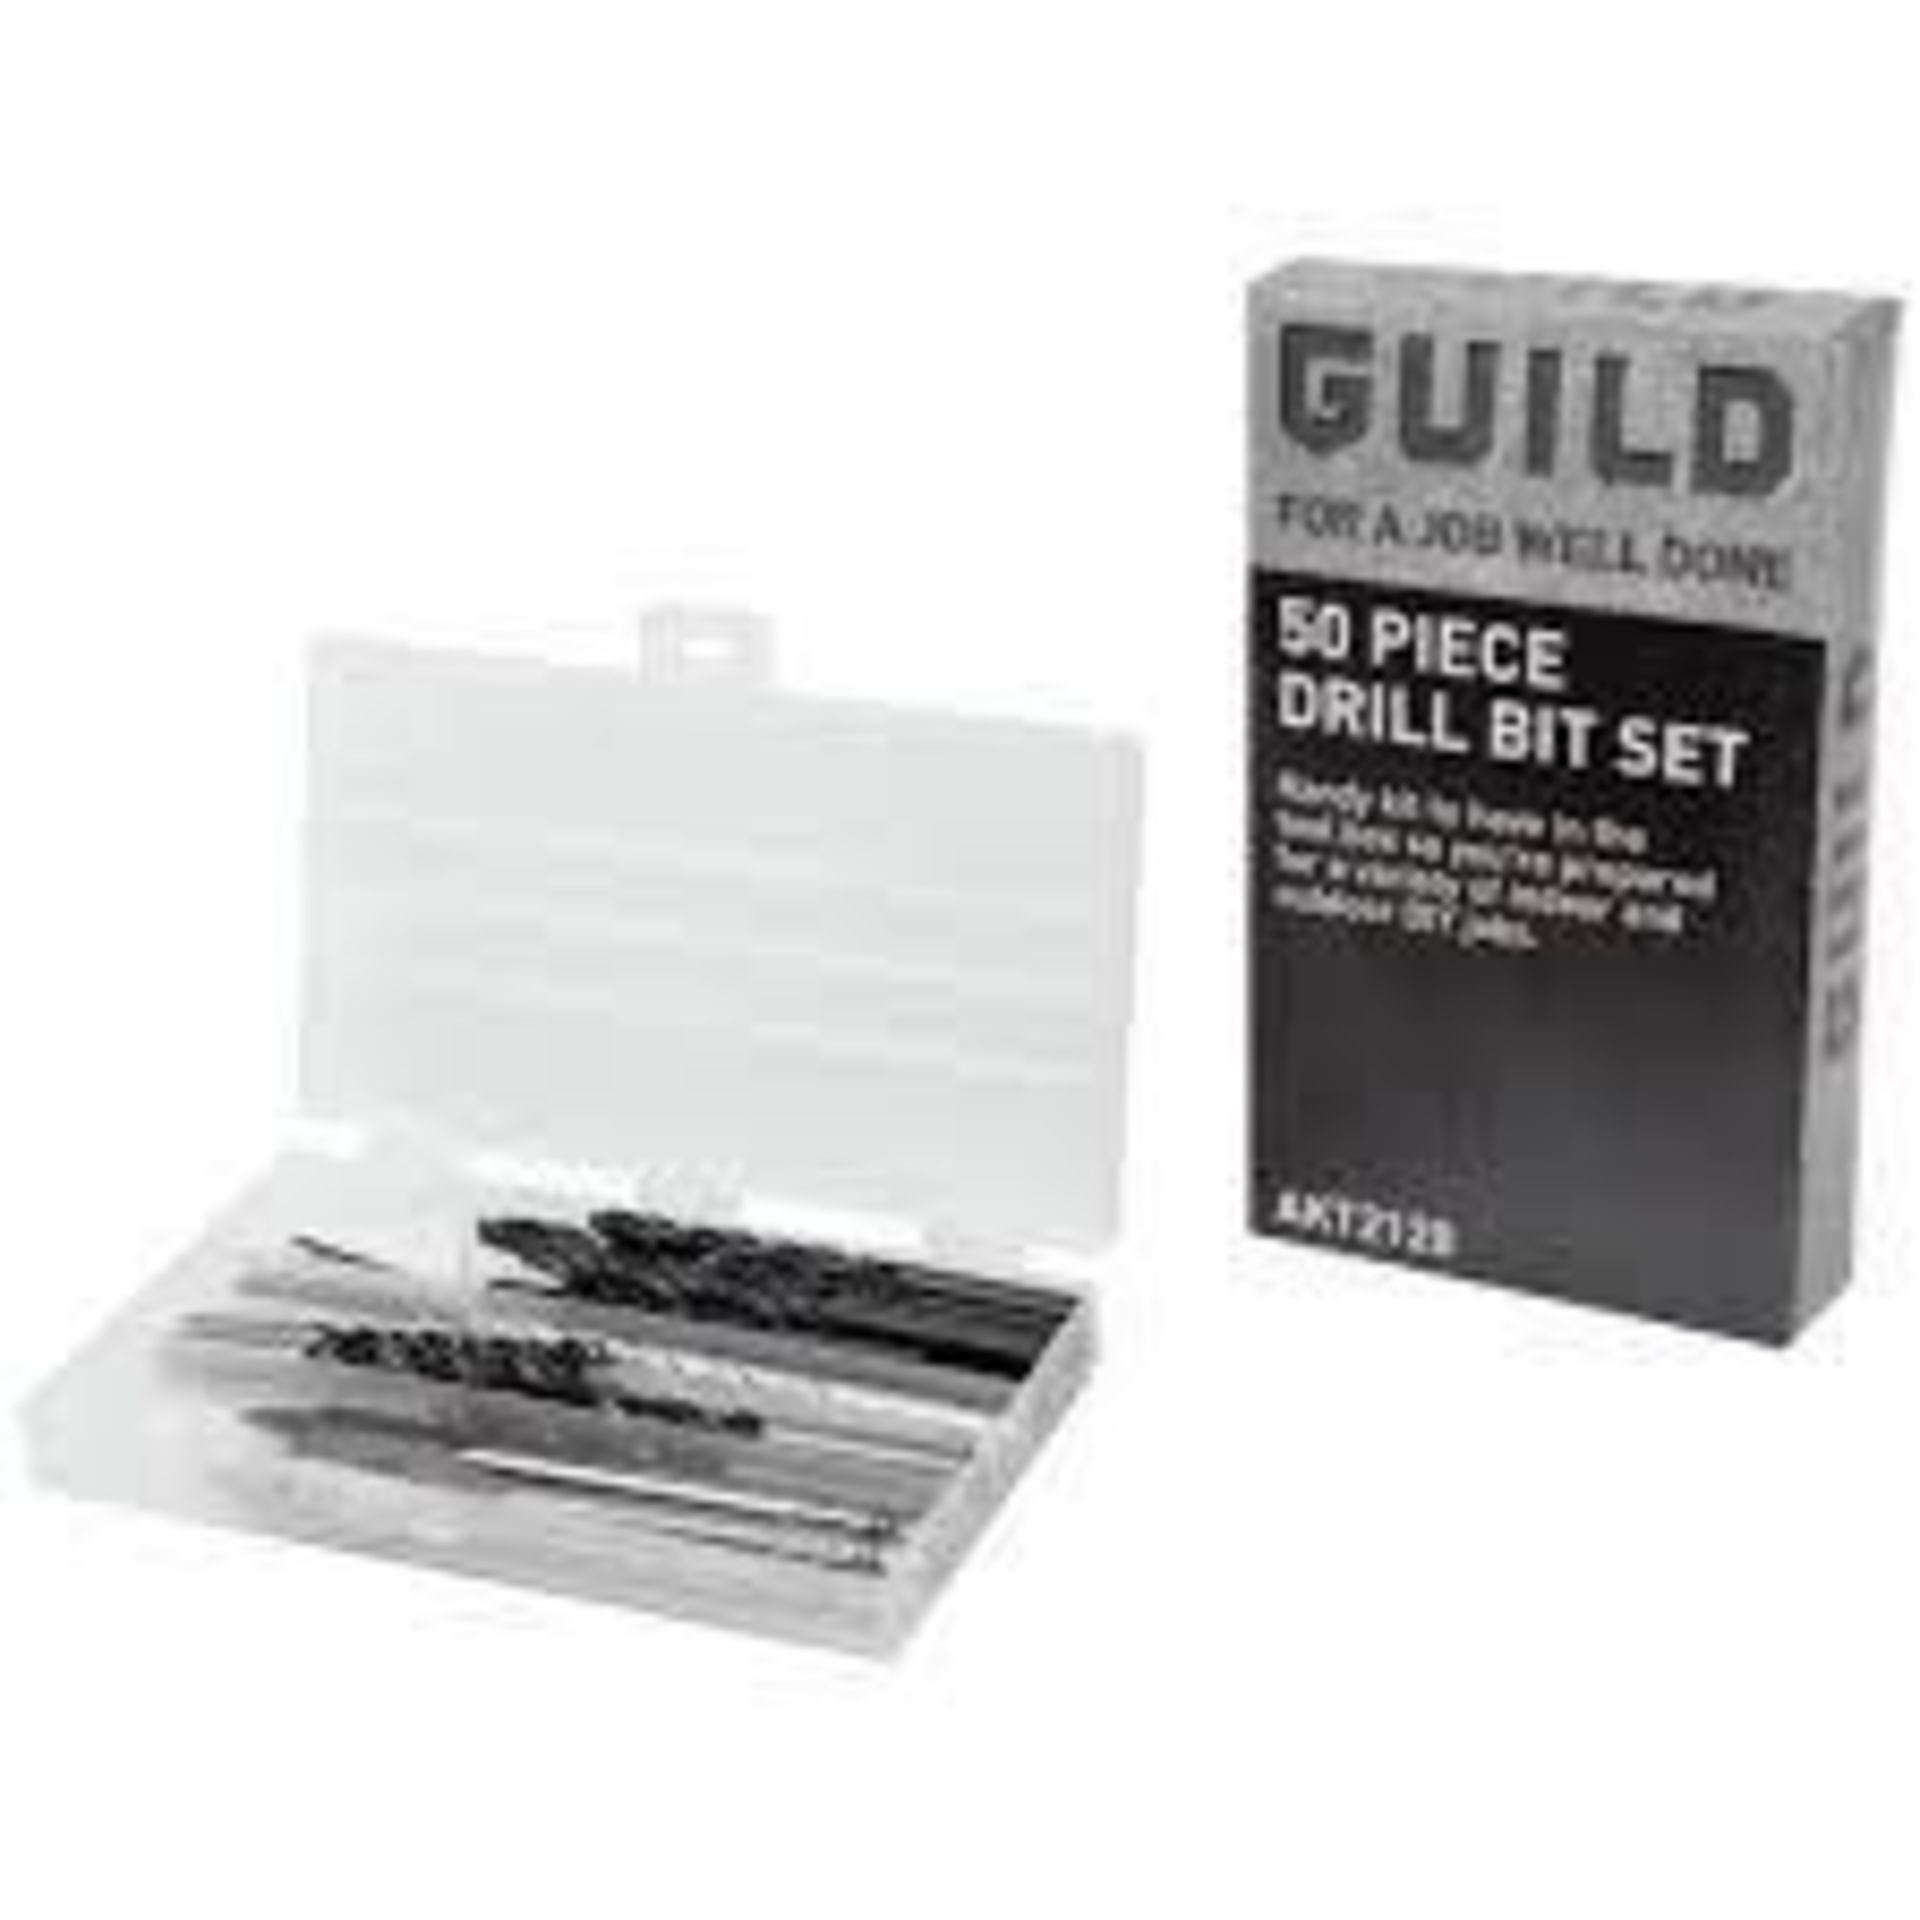 Guild 50 Piece Drill Bit Set 607/3952 £10.00 RRP